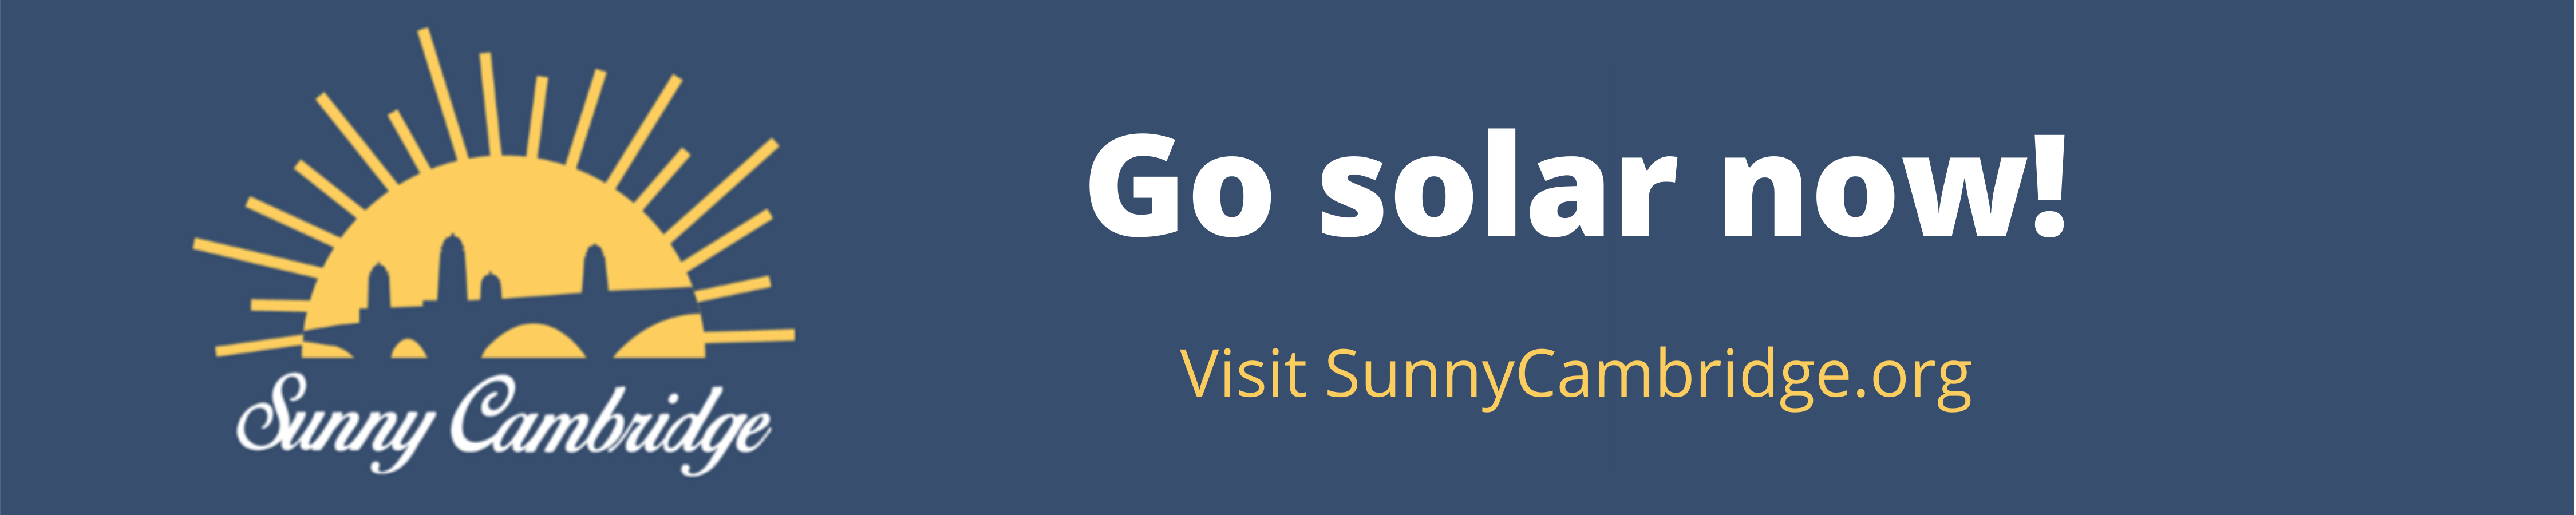 Go solar now!